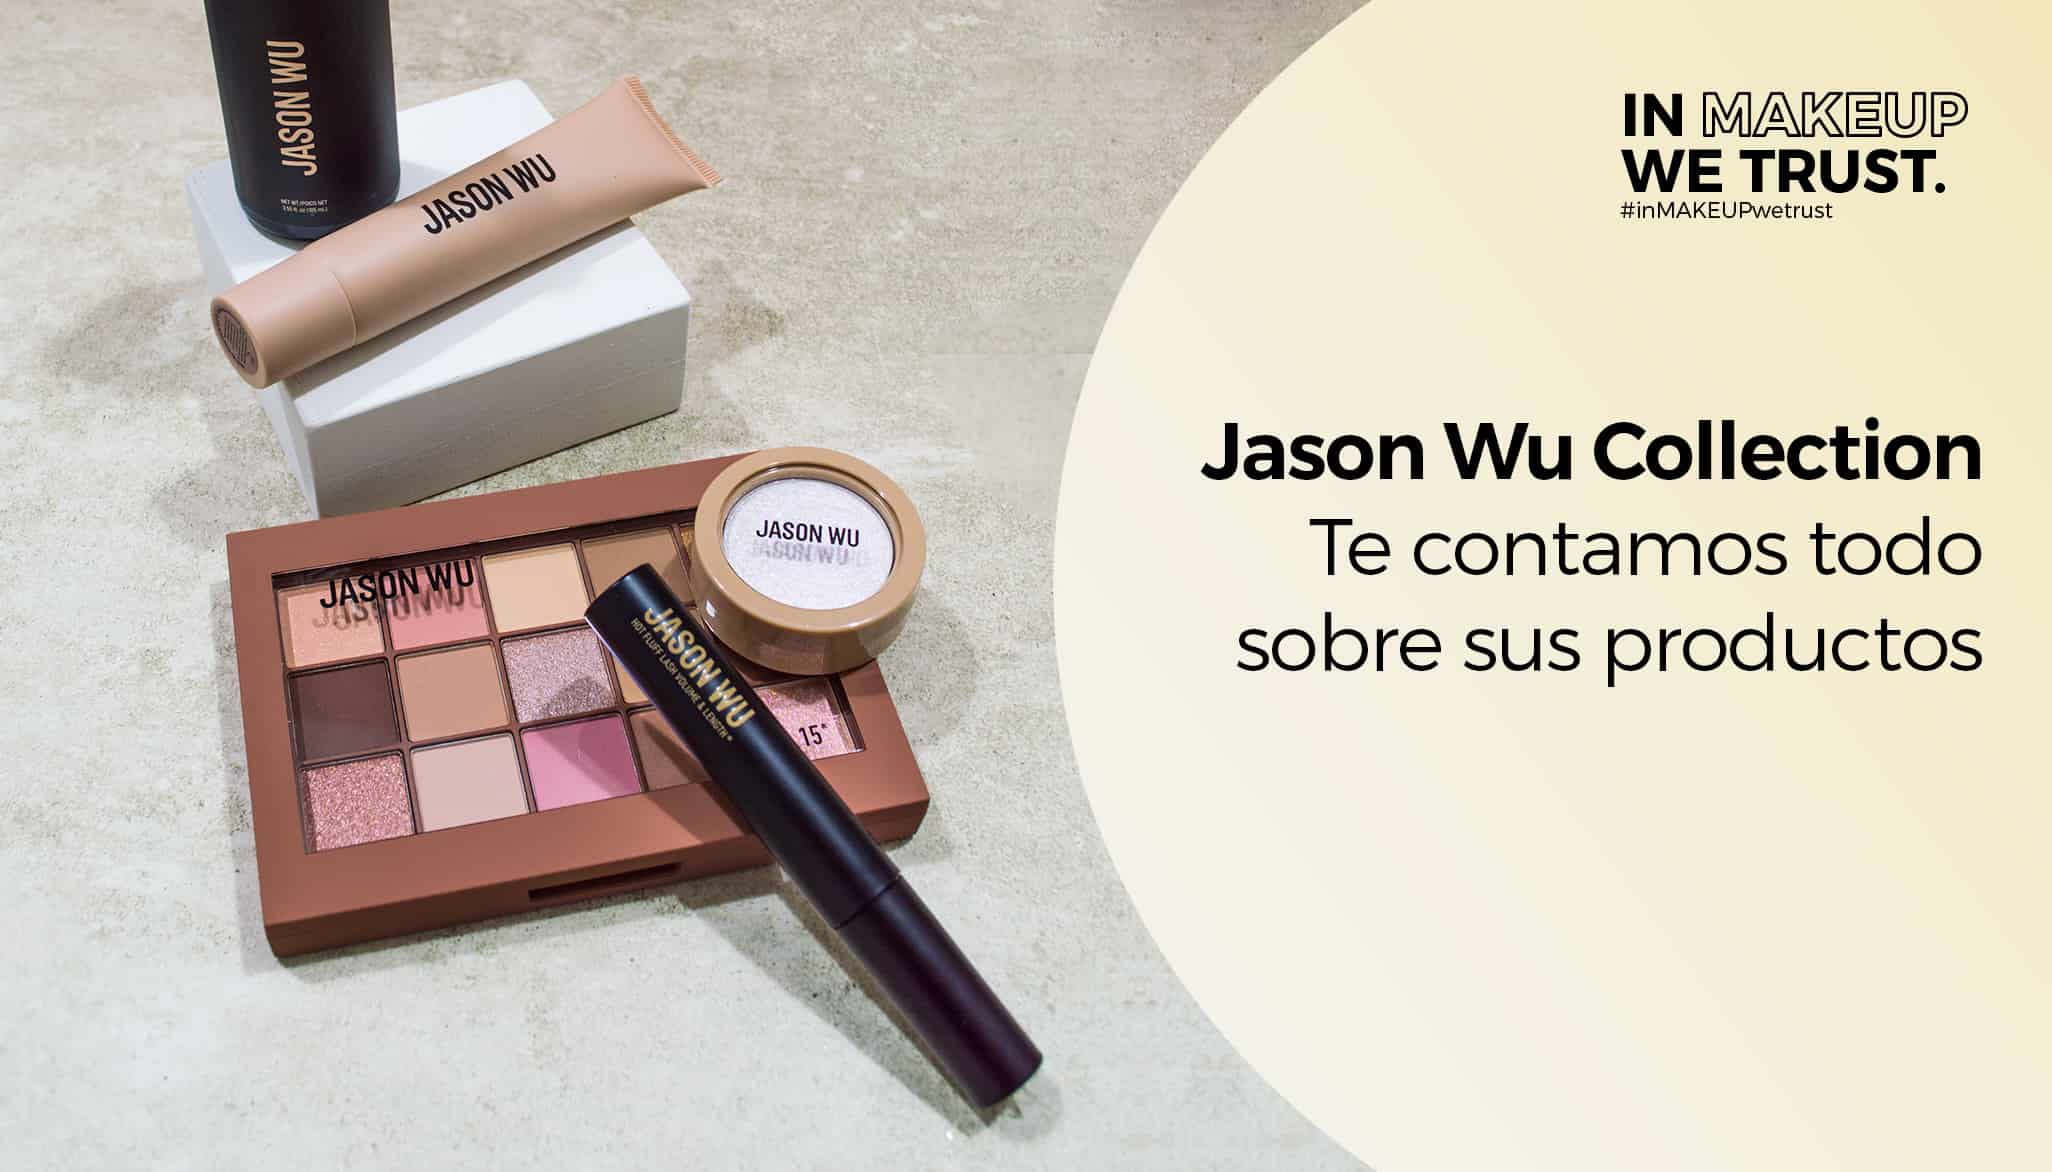 Jason Wu Collection, te contamos todo sobre sus productos